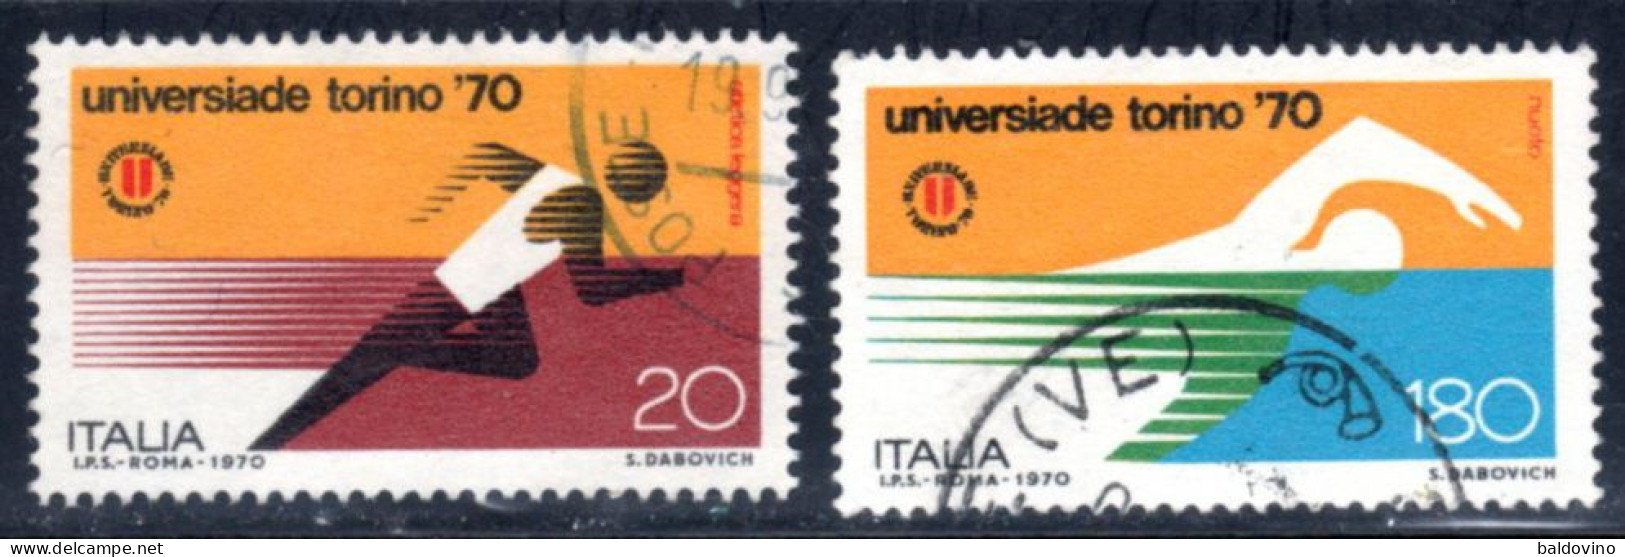 Italia 1970 Lotto 26 valori (vedi descrizione)